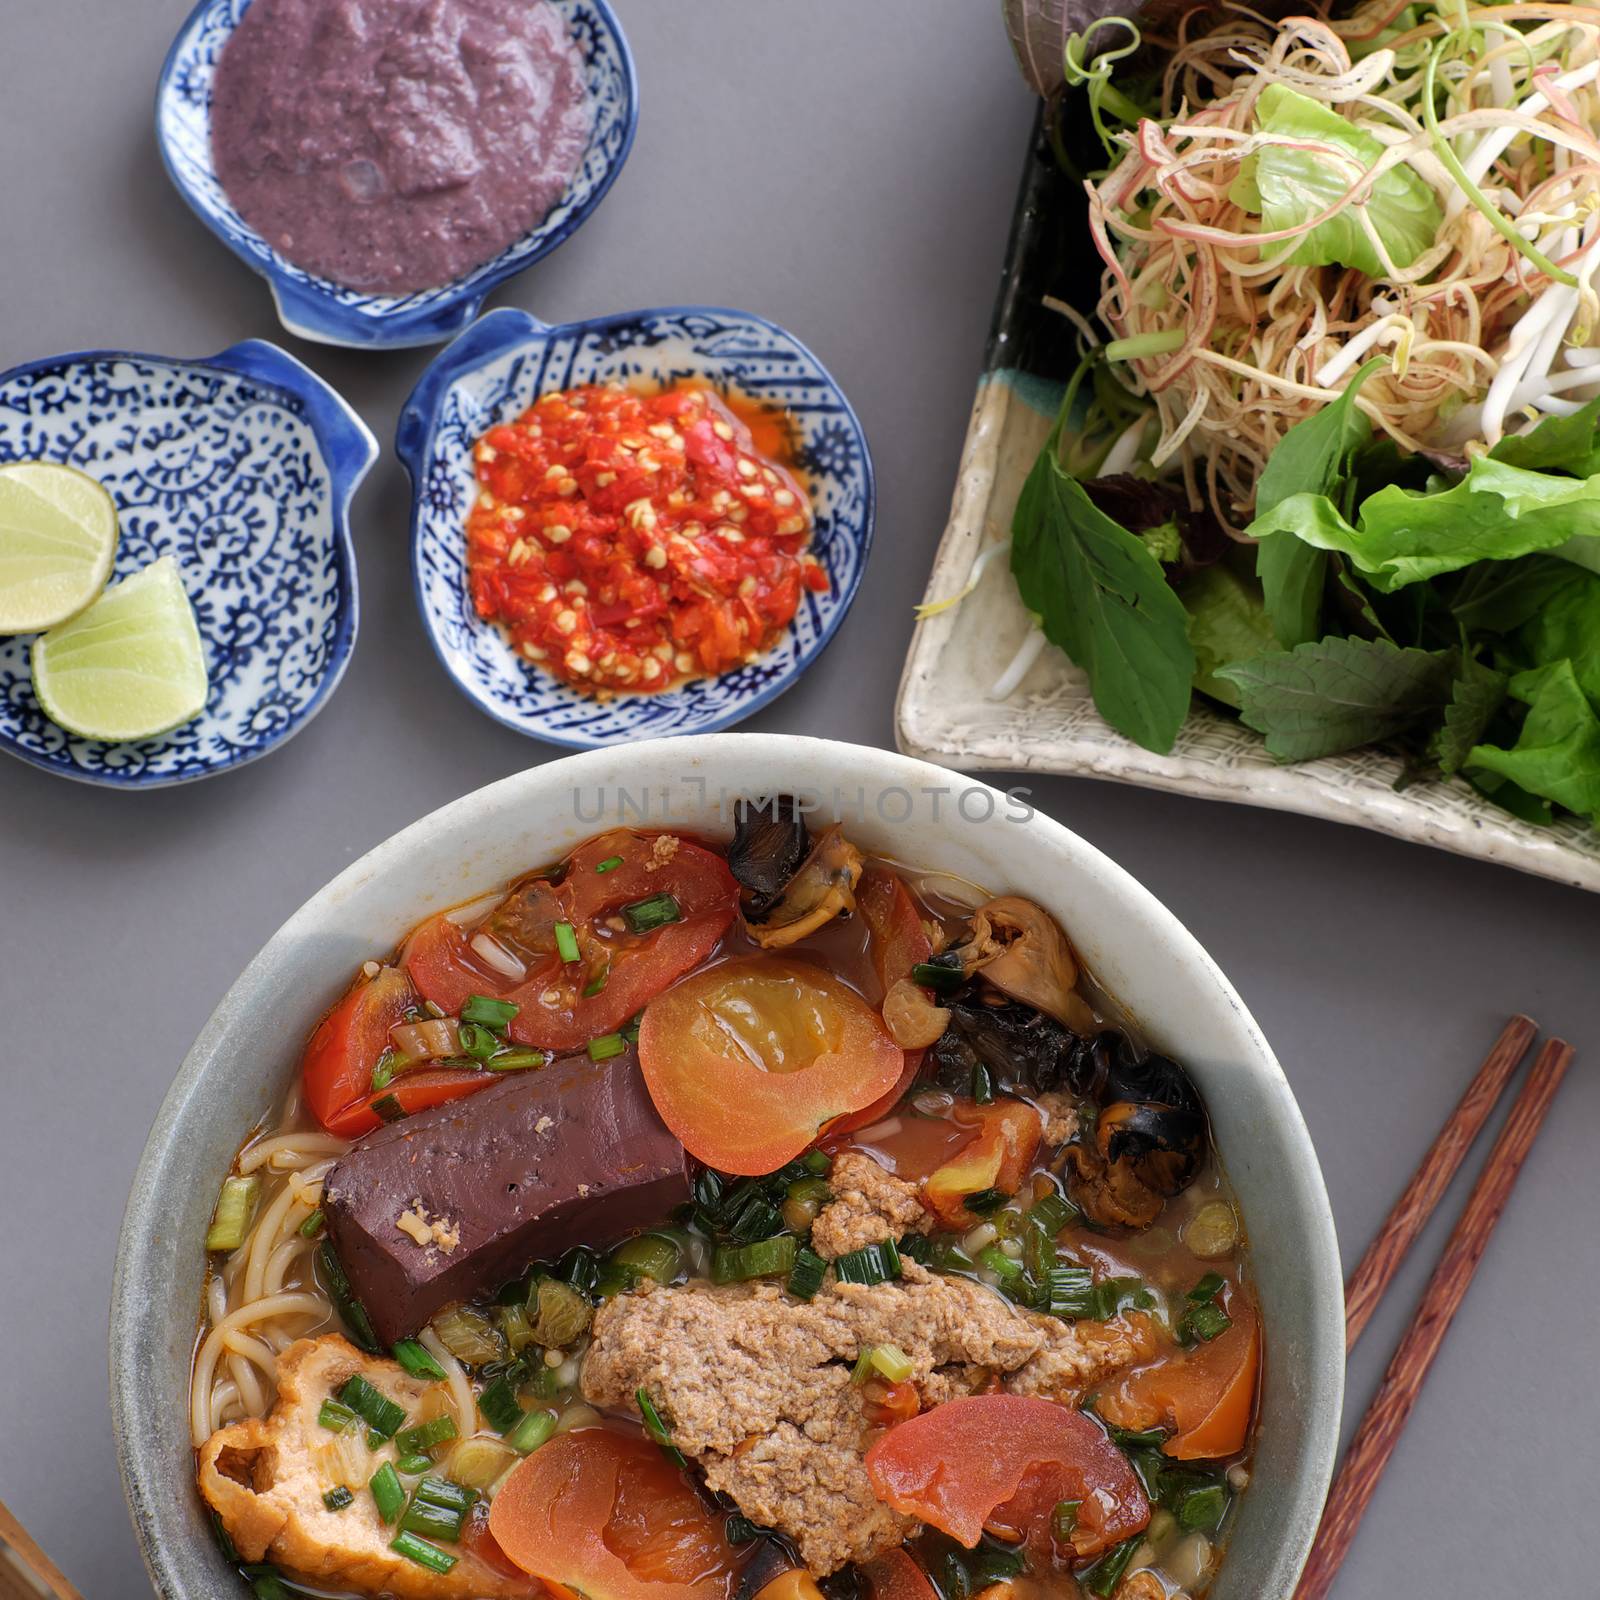 Vietnamese food, bun rieu and canh bun by xuanhuongho